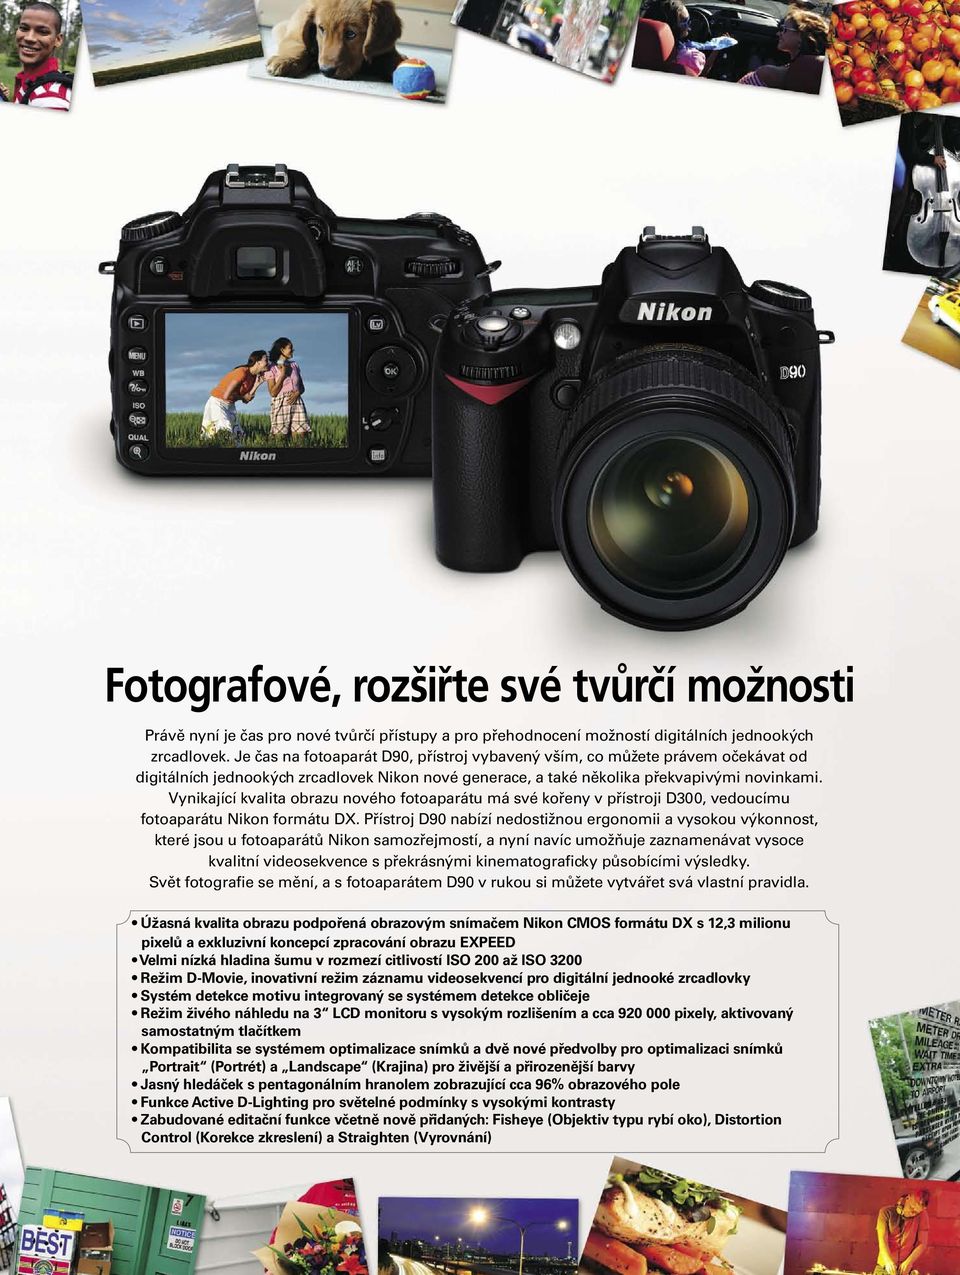 Vynikající kvalita obrazu nového fotoaparátu má své kořeny v přístroji D300, vedoucímu fotoaparátu Nikon formátu DX.